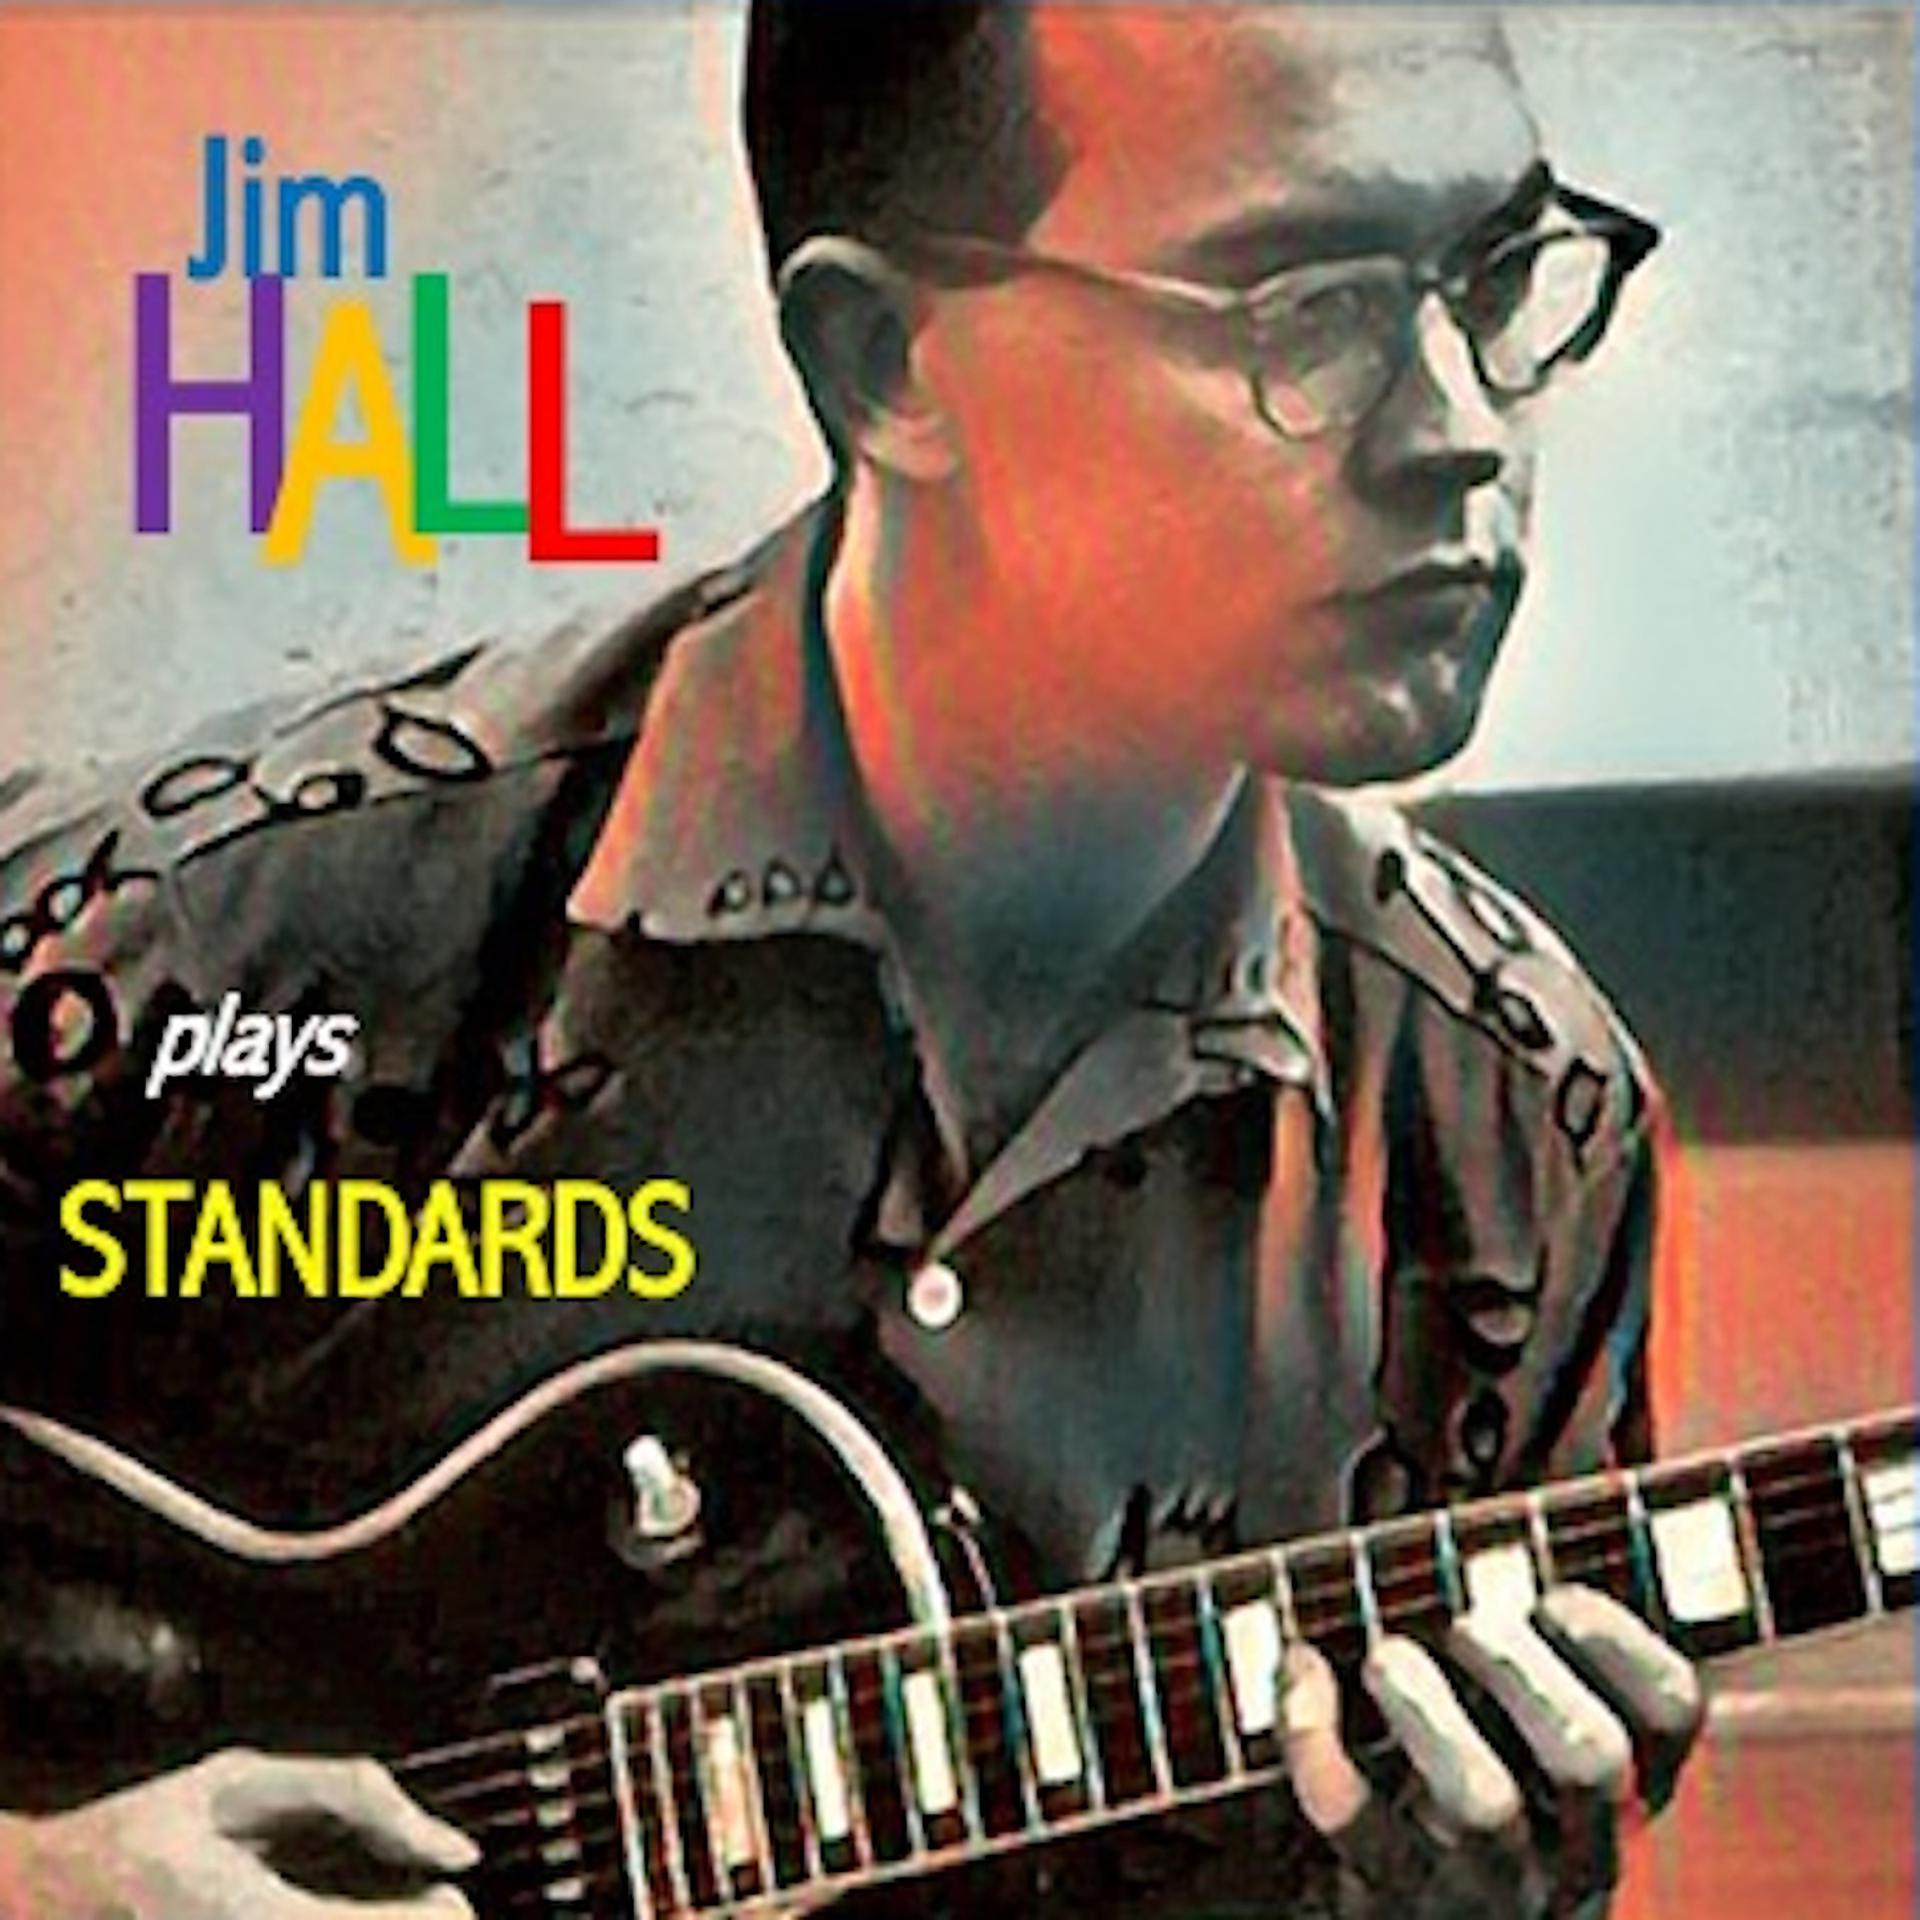 Jim hall